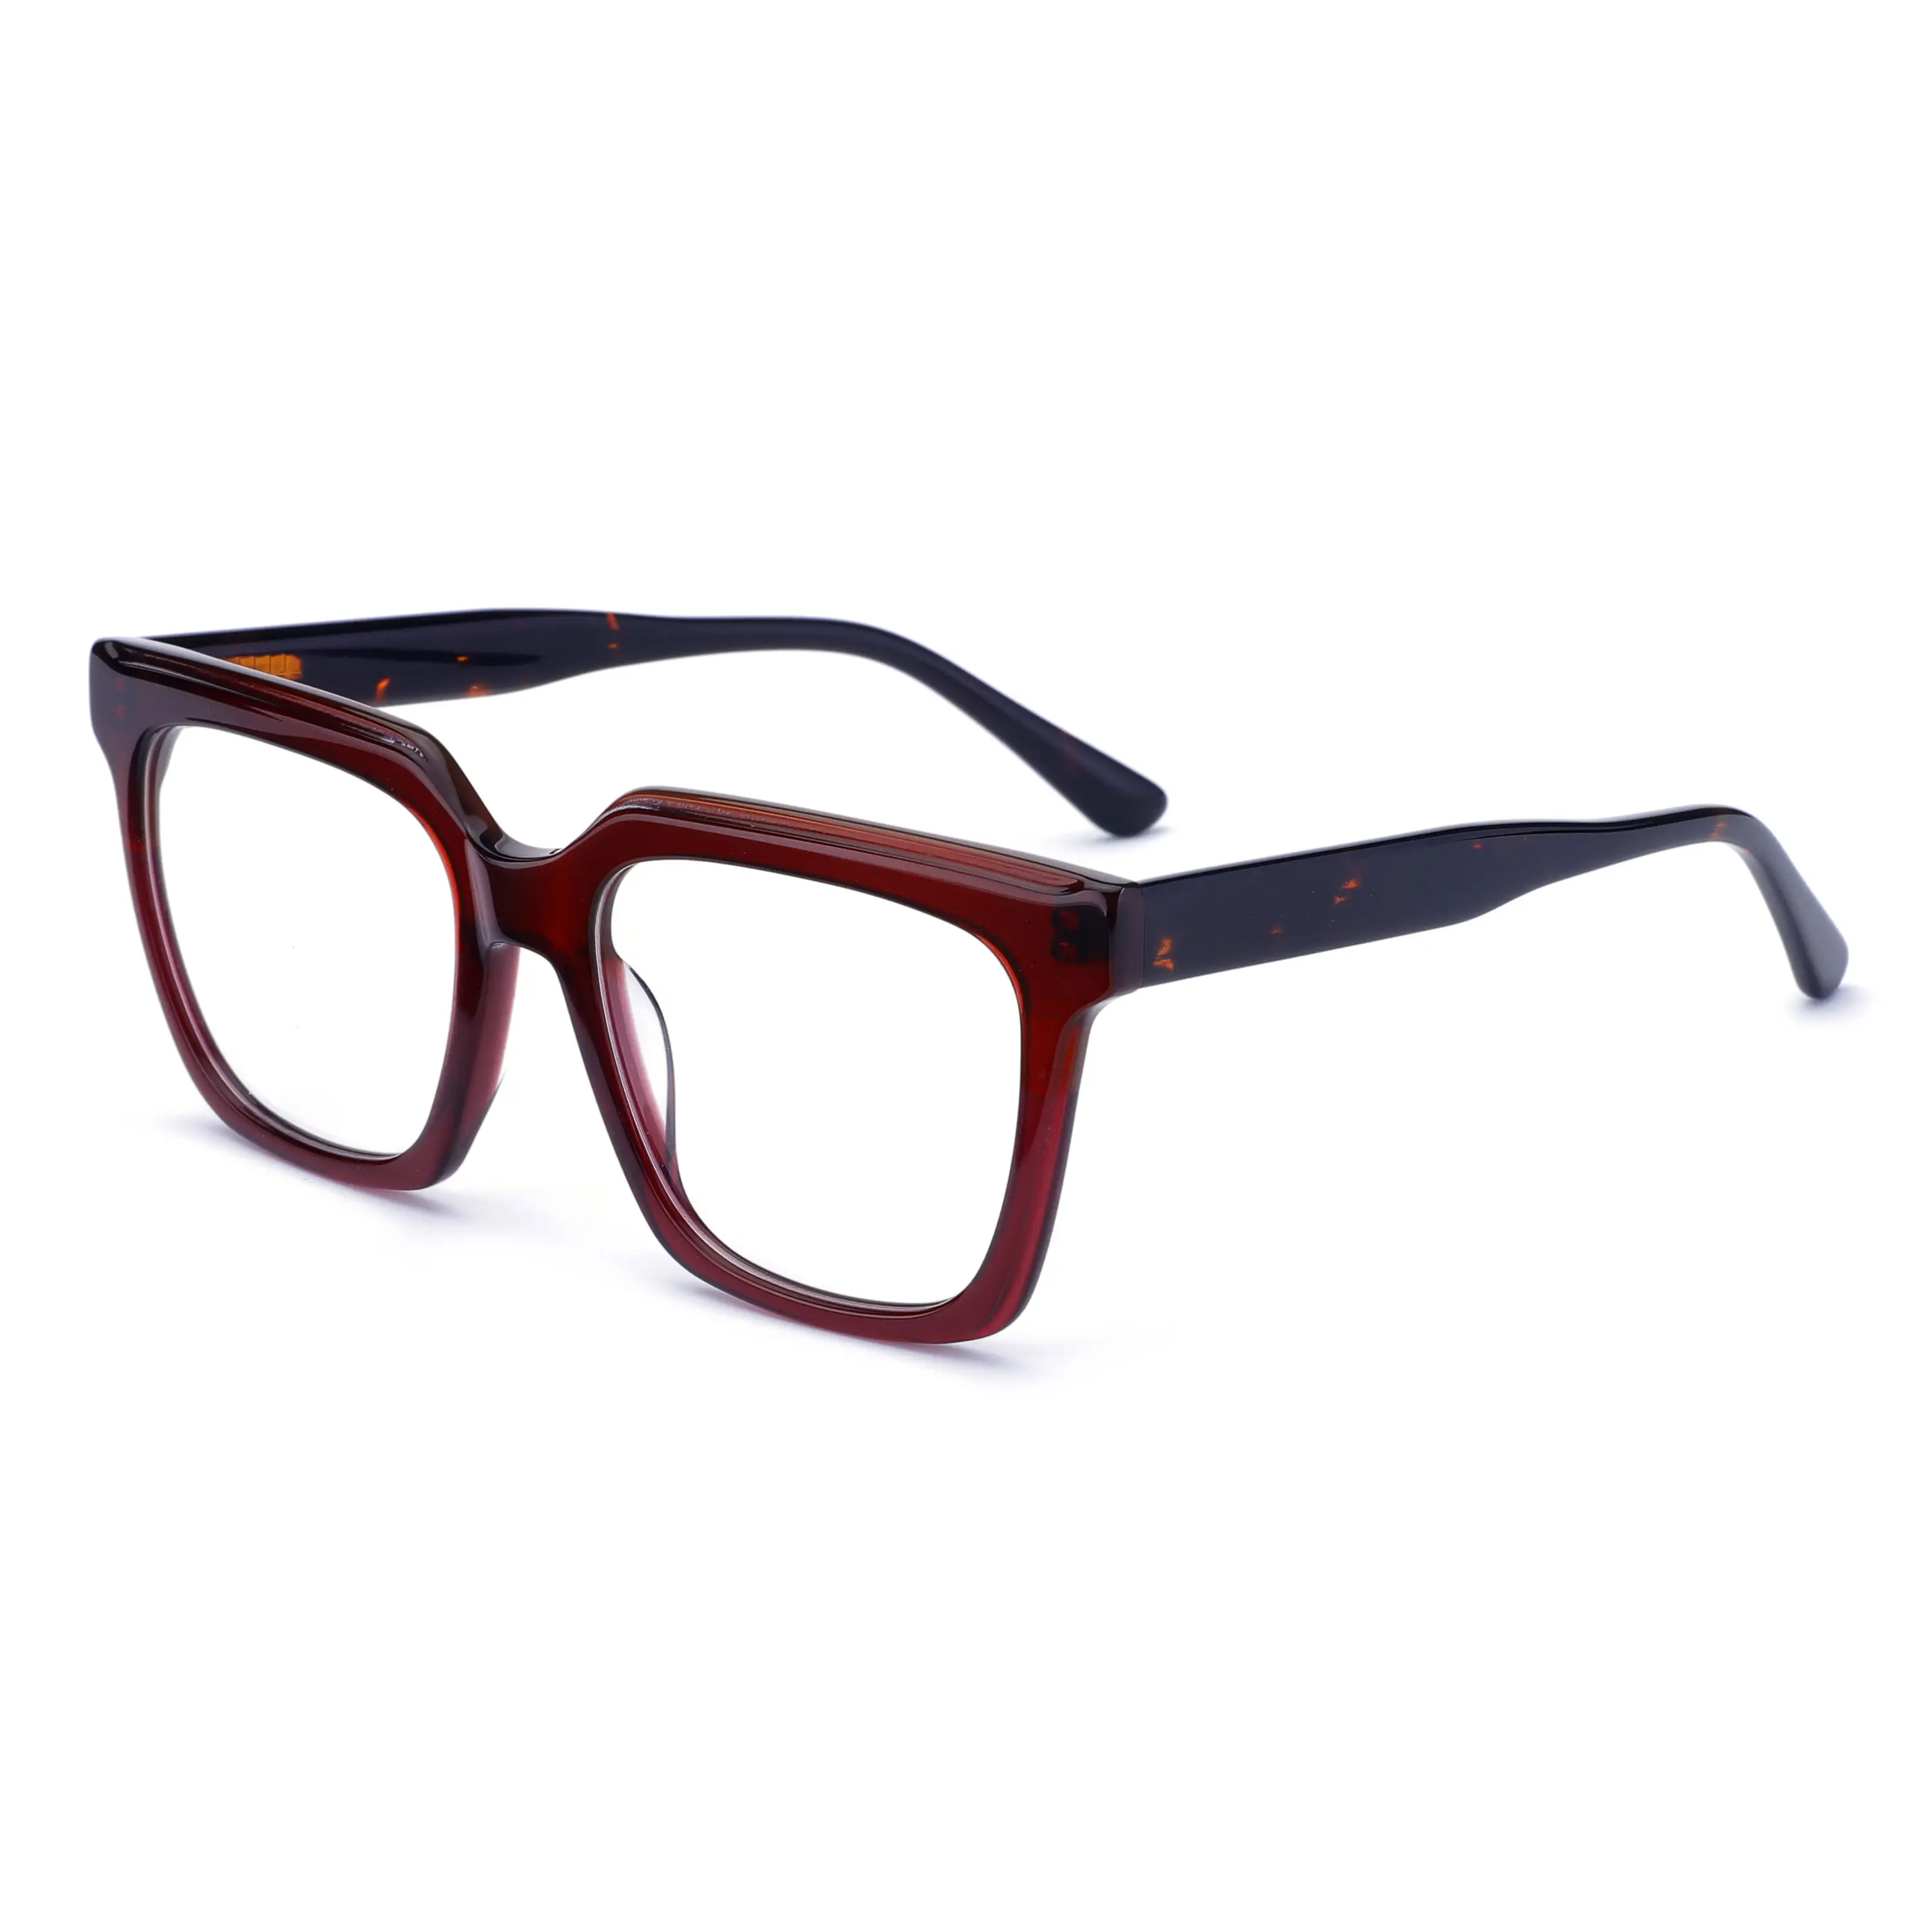 نظارة سميكة عصرية ذات جودة عالية ومقاومة للون الأزرق بإطار من مادة الأسيتات لرؤية العينين بشكل مربع للرجال وتتميز بتكلفة عالية